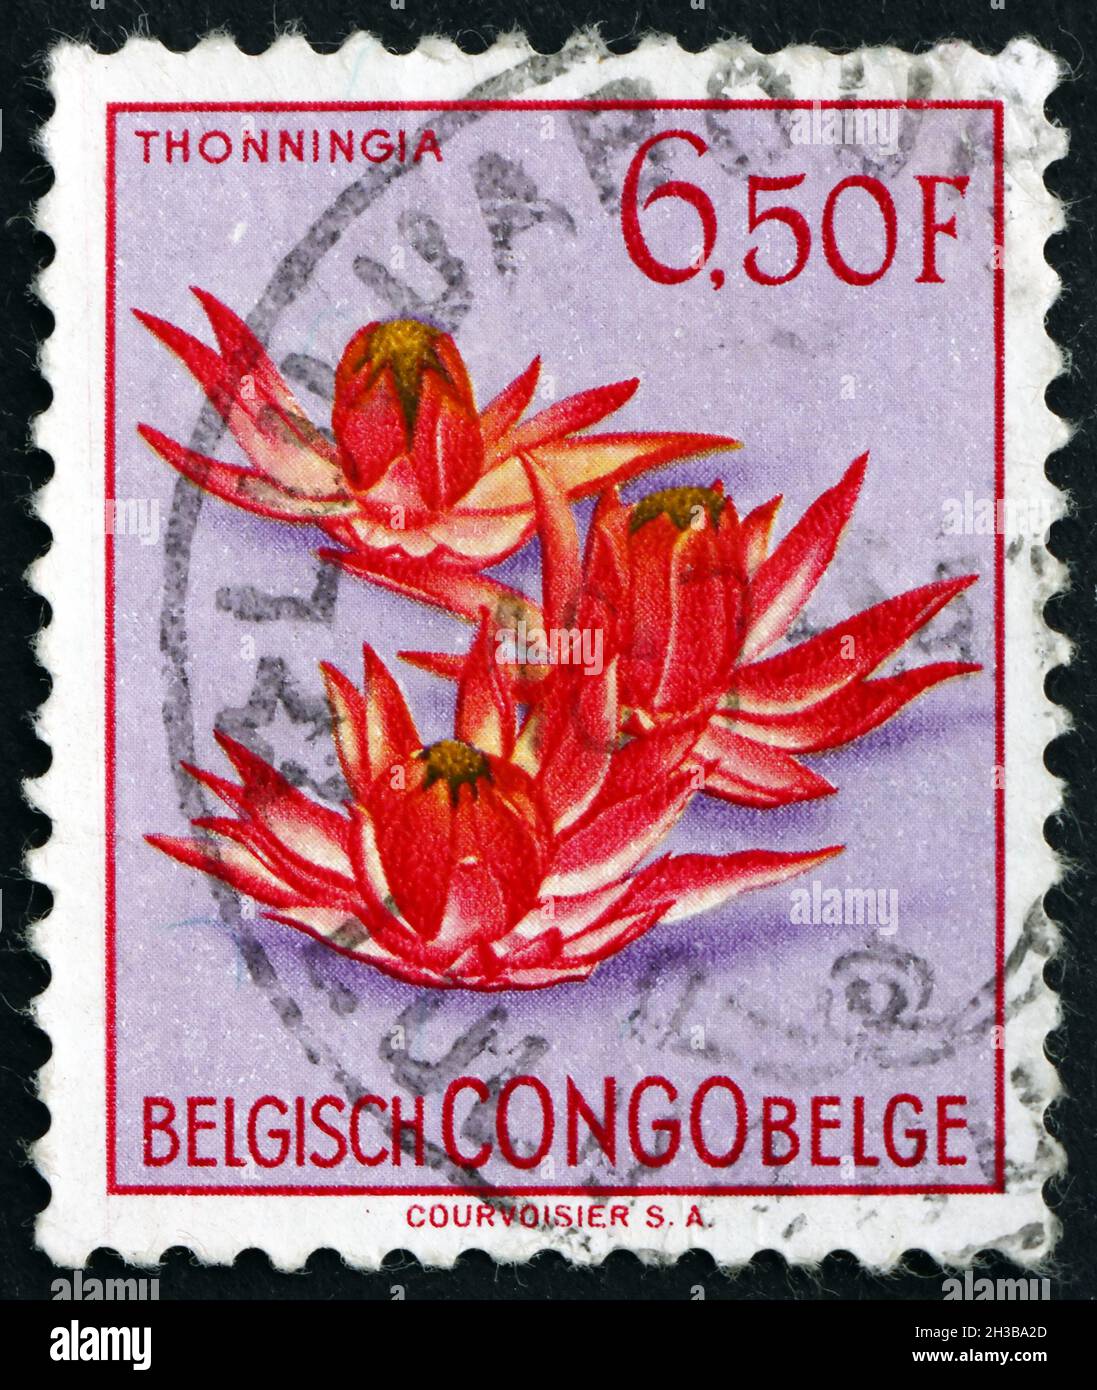 BELGISCHER KONGO - UM 1952: Eine in Belgisch-Kongo gedruckte Marke zeigt Ground Pineapple, Tonningia Sanguinea, Blumenpflanze, um 1952 Stockfoto